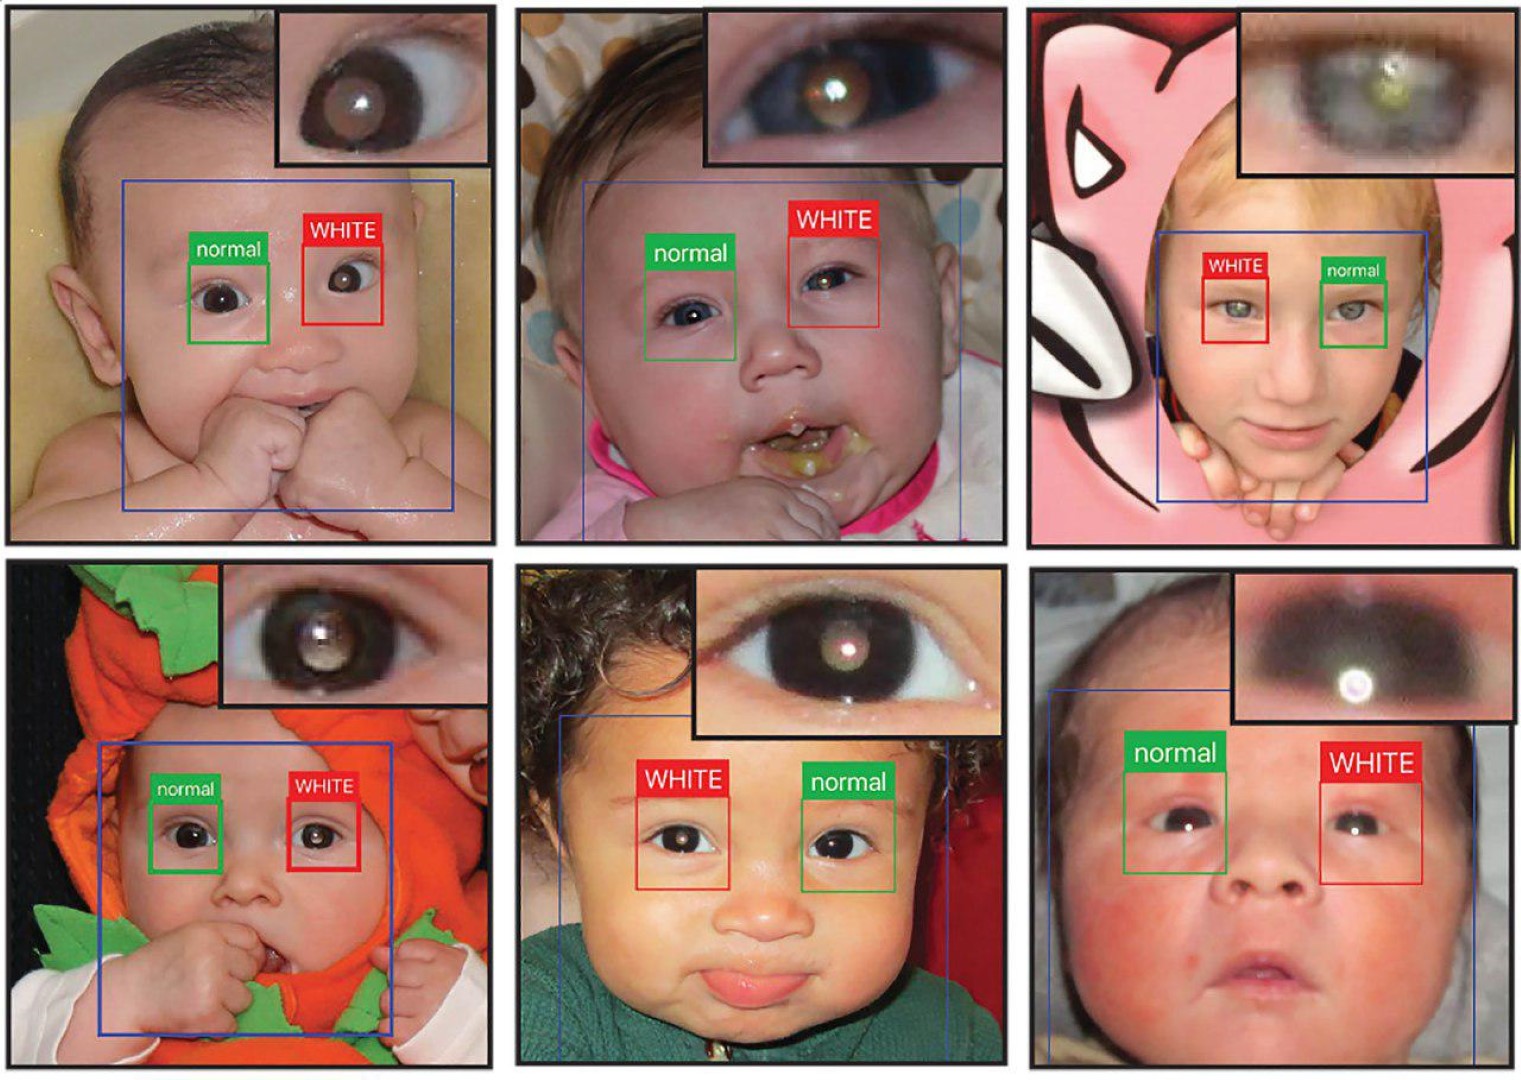  Проблемы зрения, которые можно обнаружить на фотографии с помощью нового приложения